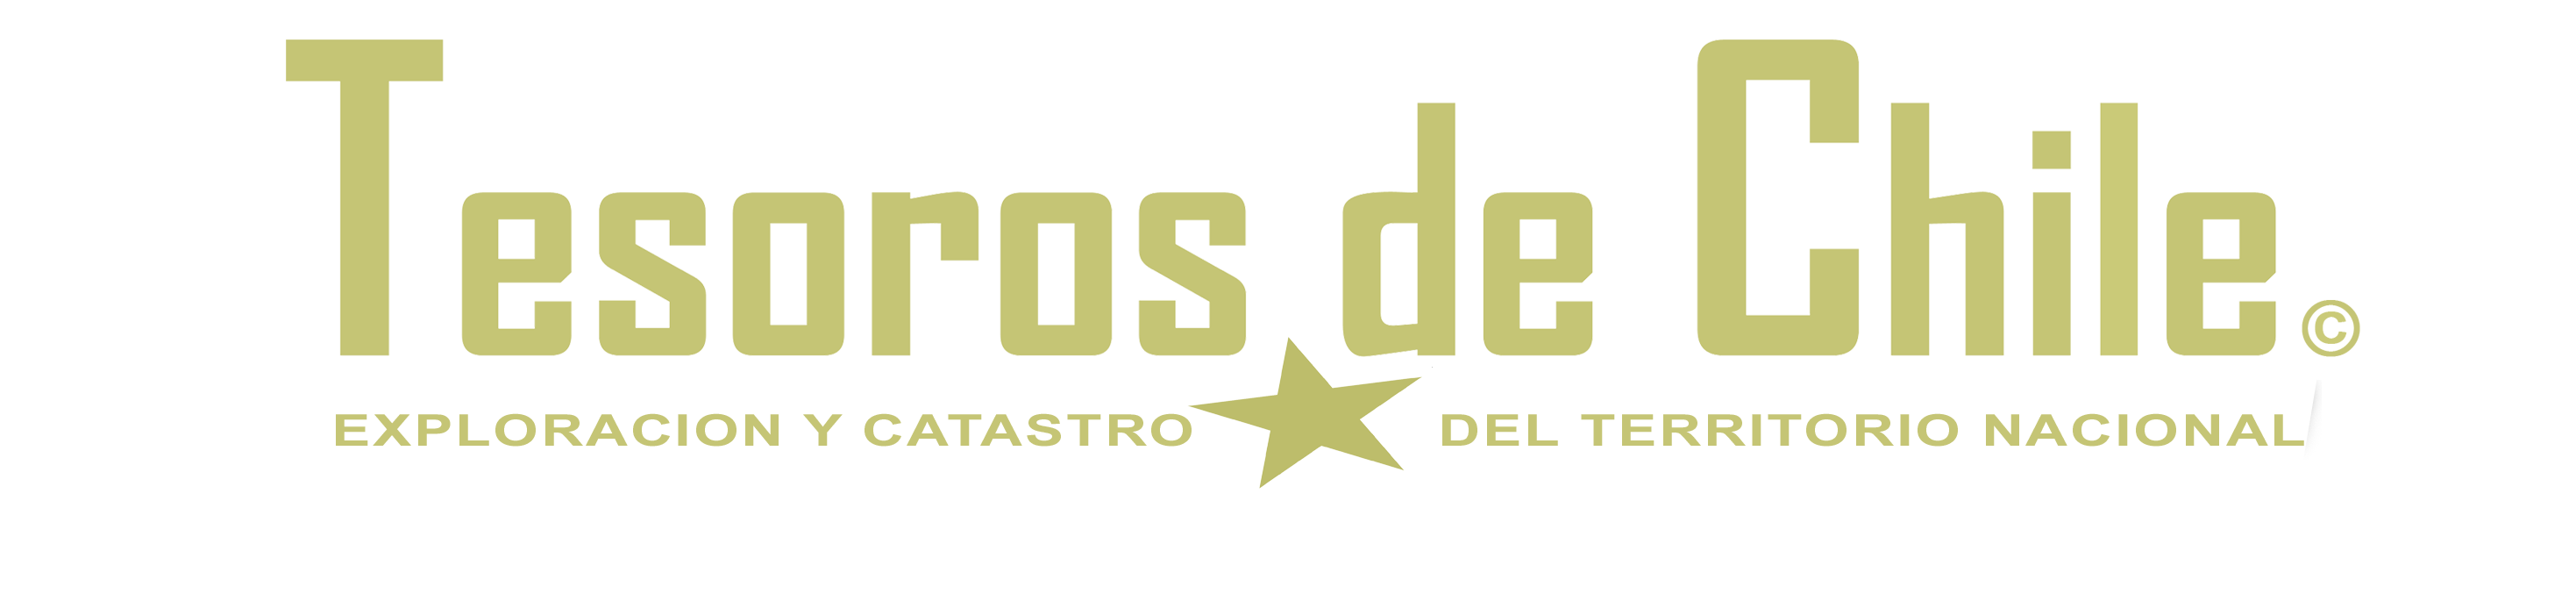 TESOROS DE CHILE